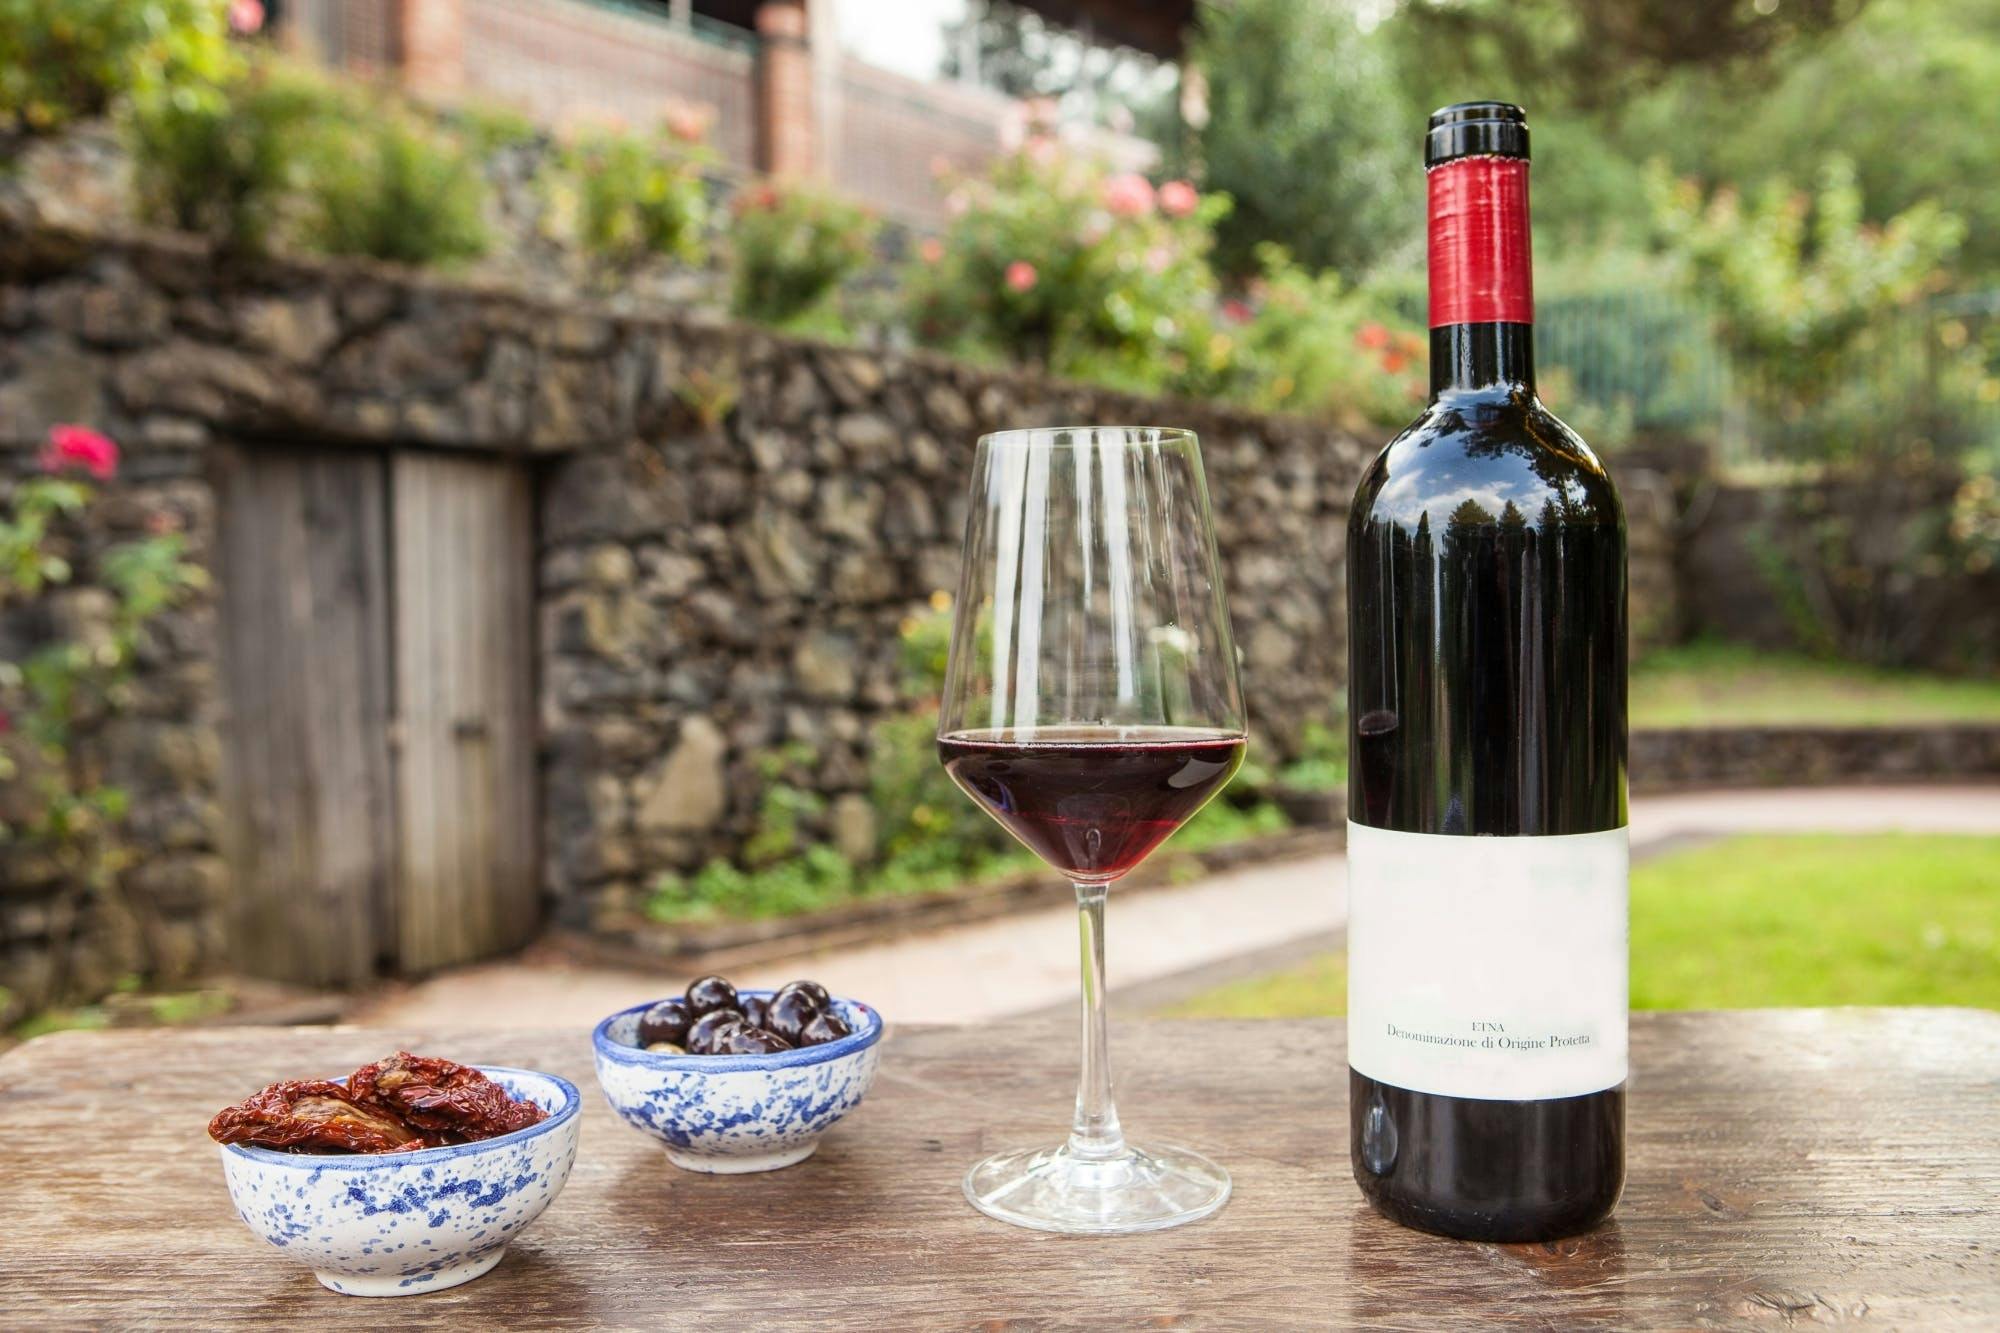 Visite de vignobles et expérience de dégustation de vins dans le parc national de l'Etna